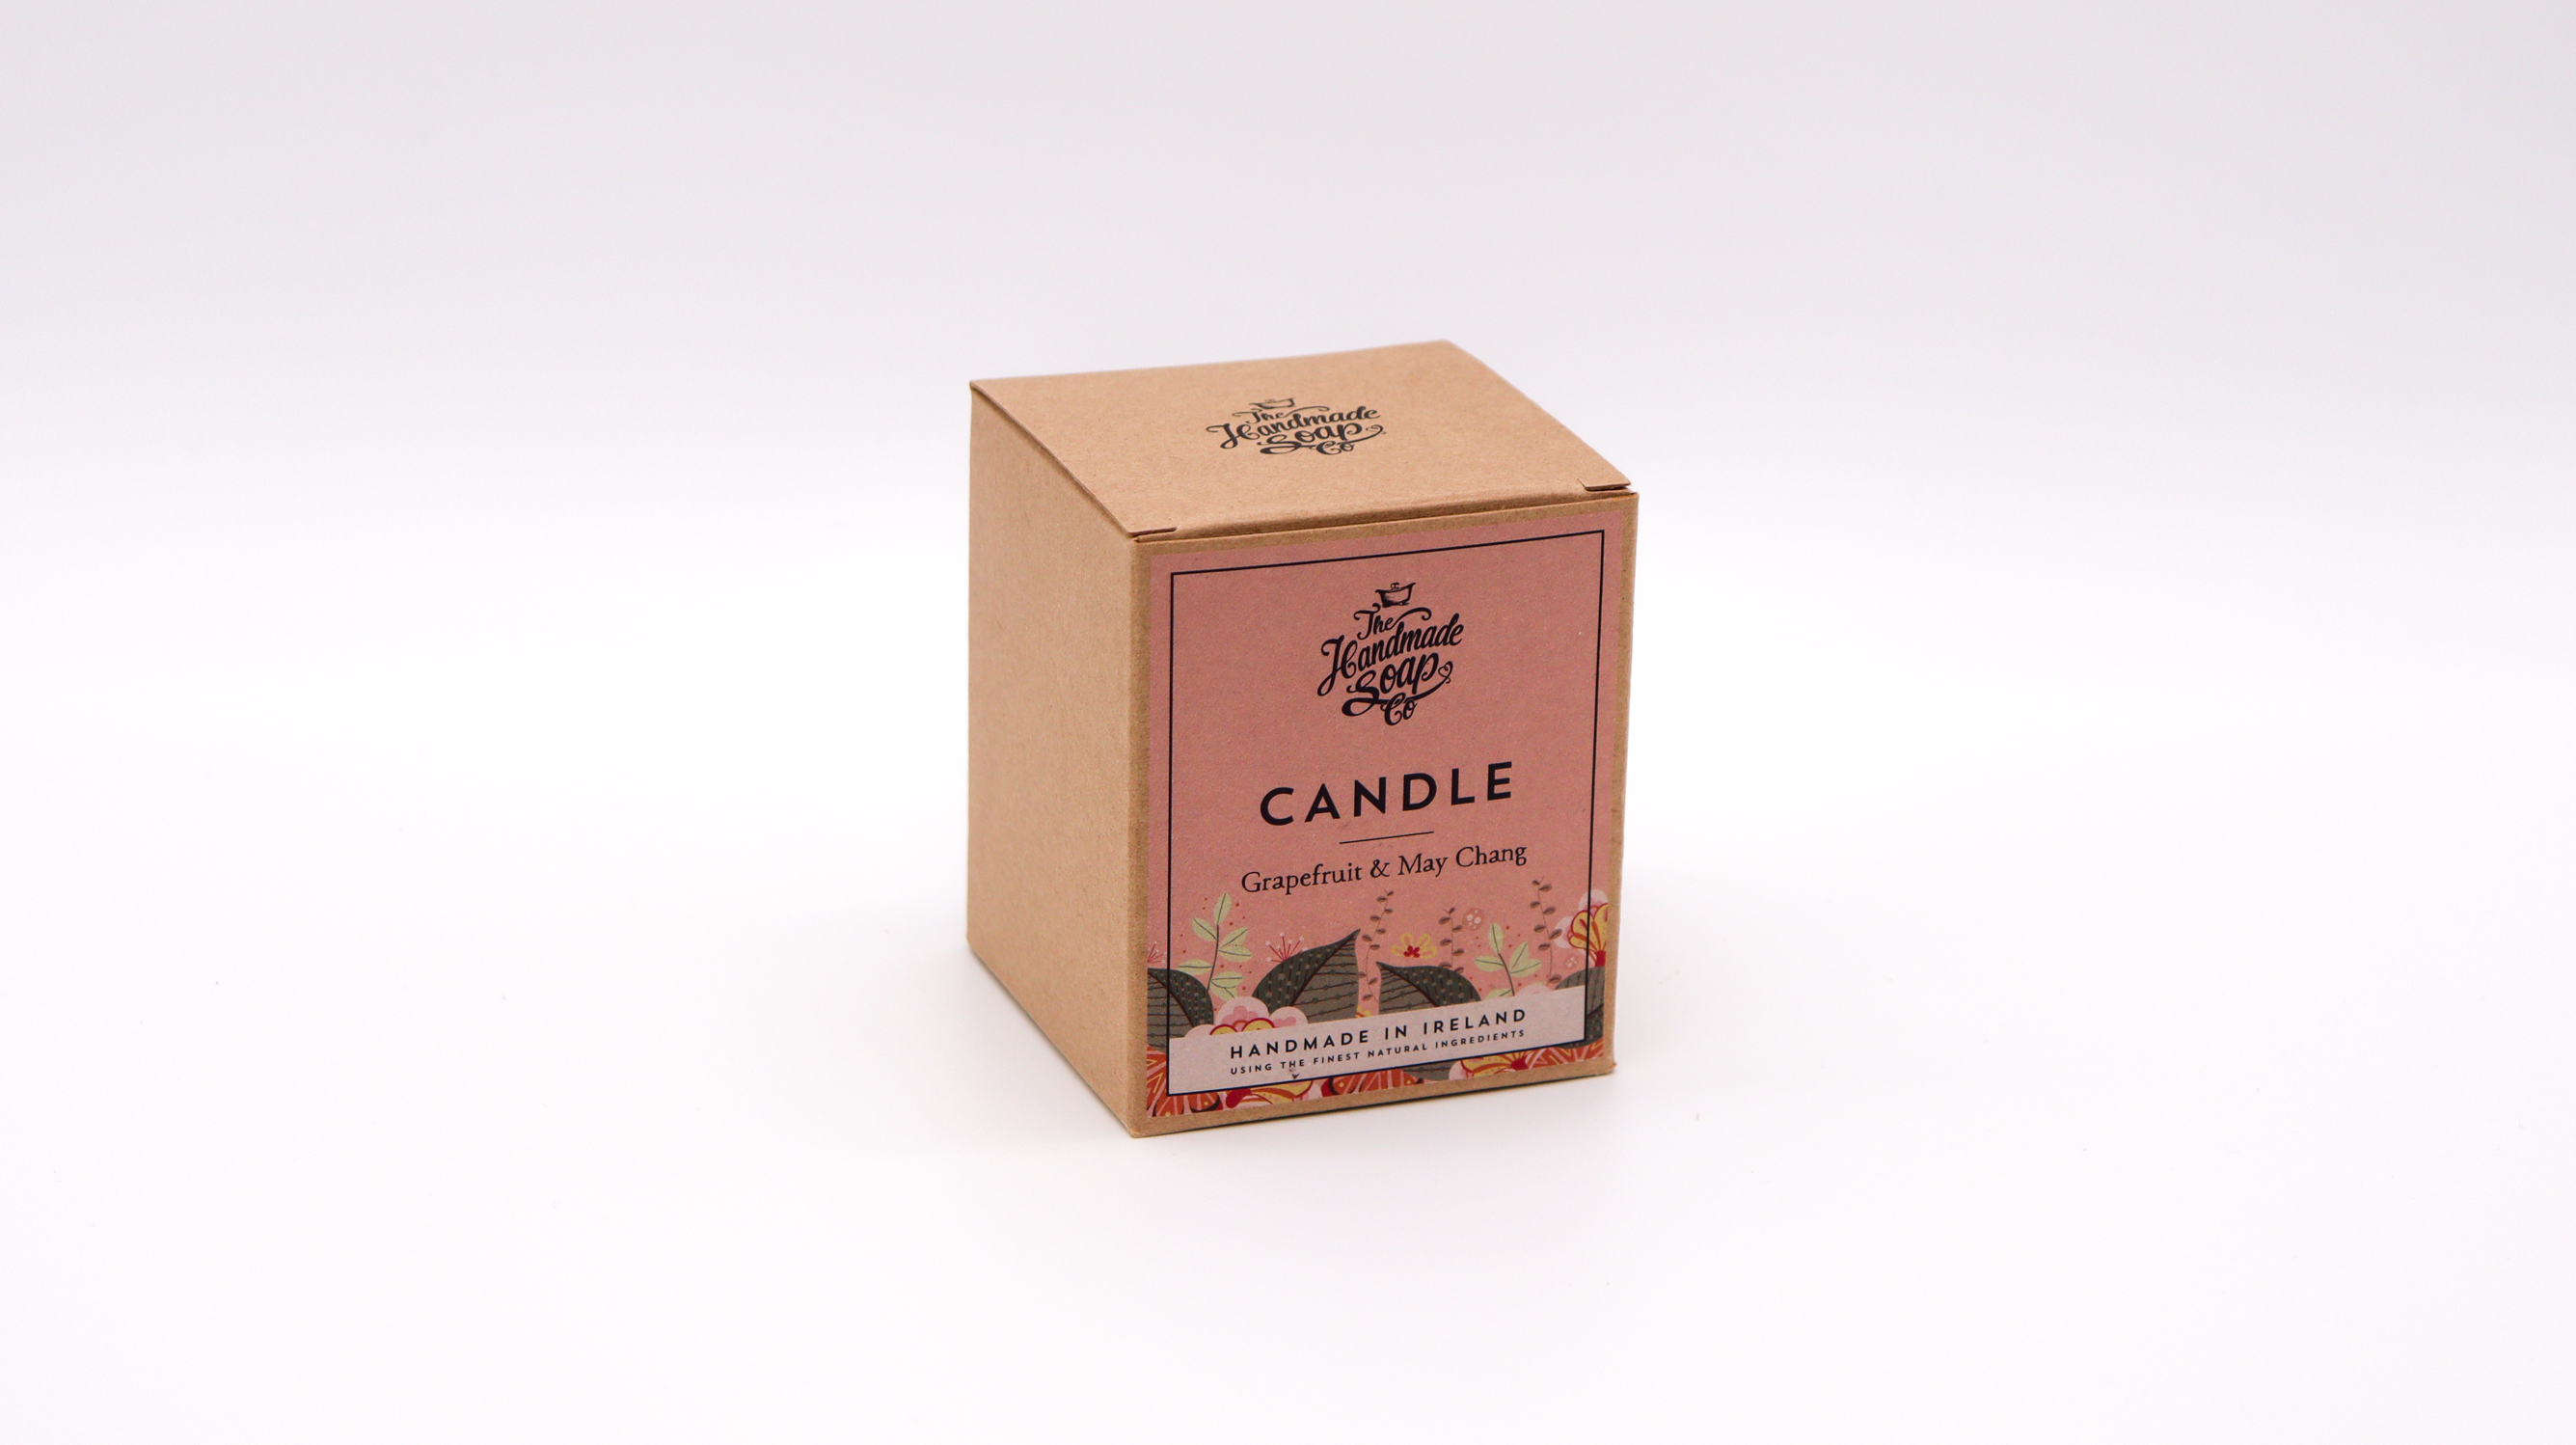 Handmade Soap Company - Grapefruit & May Chang Candle